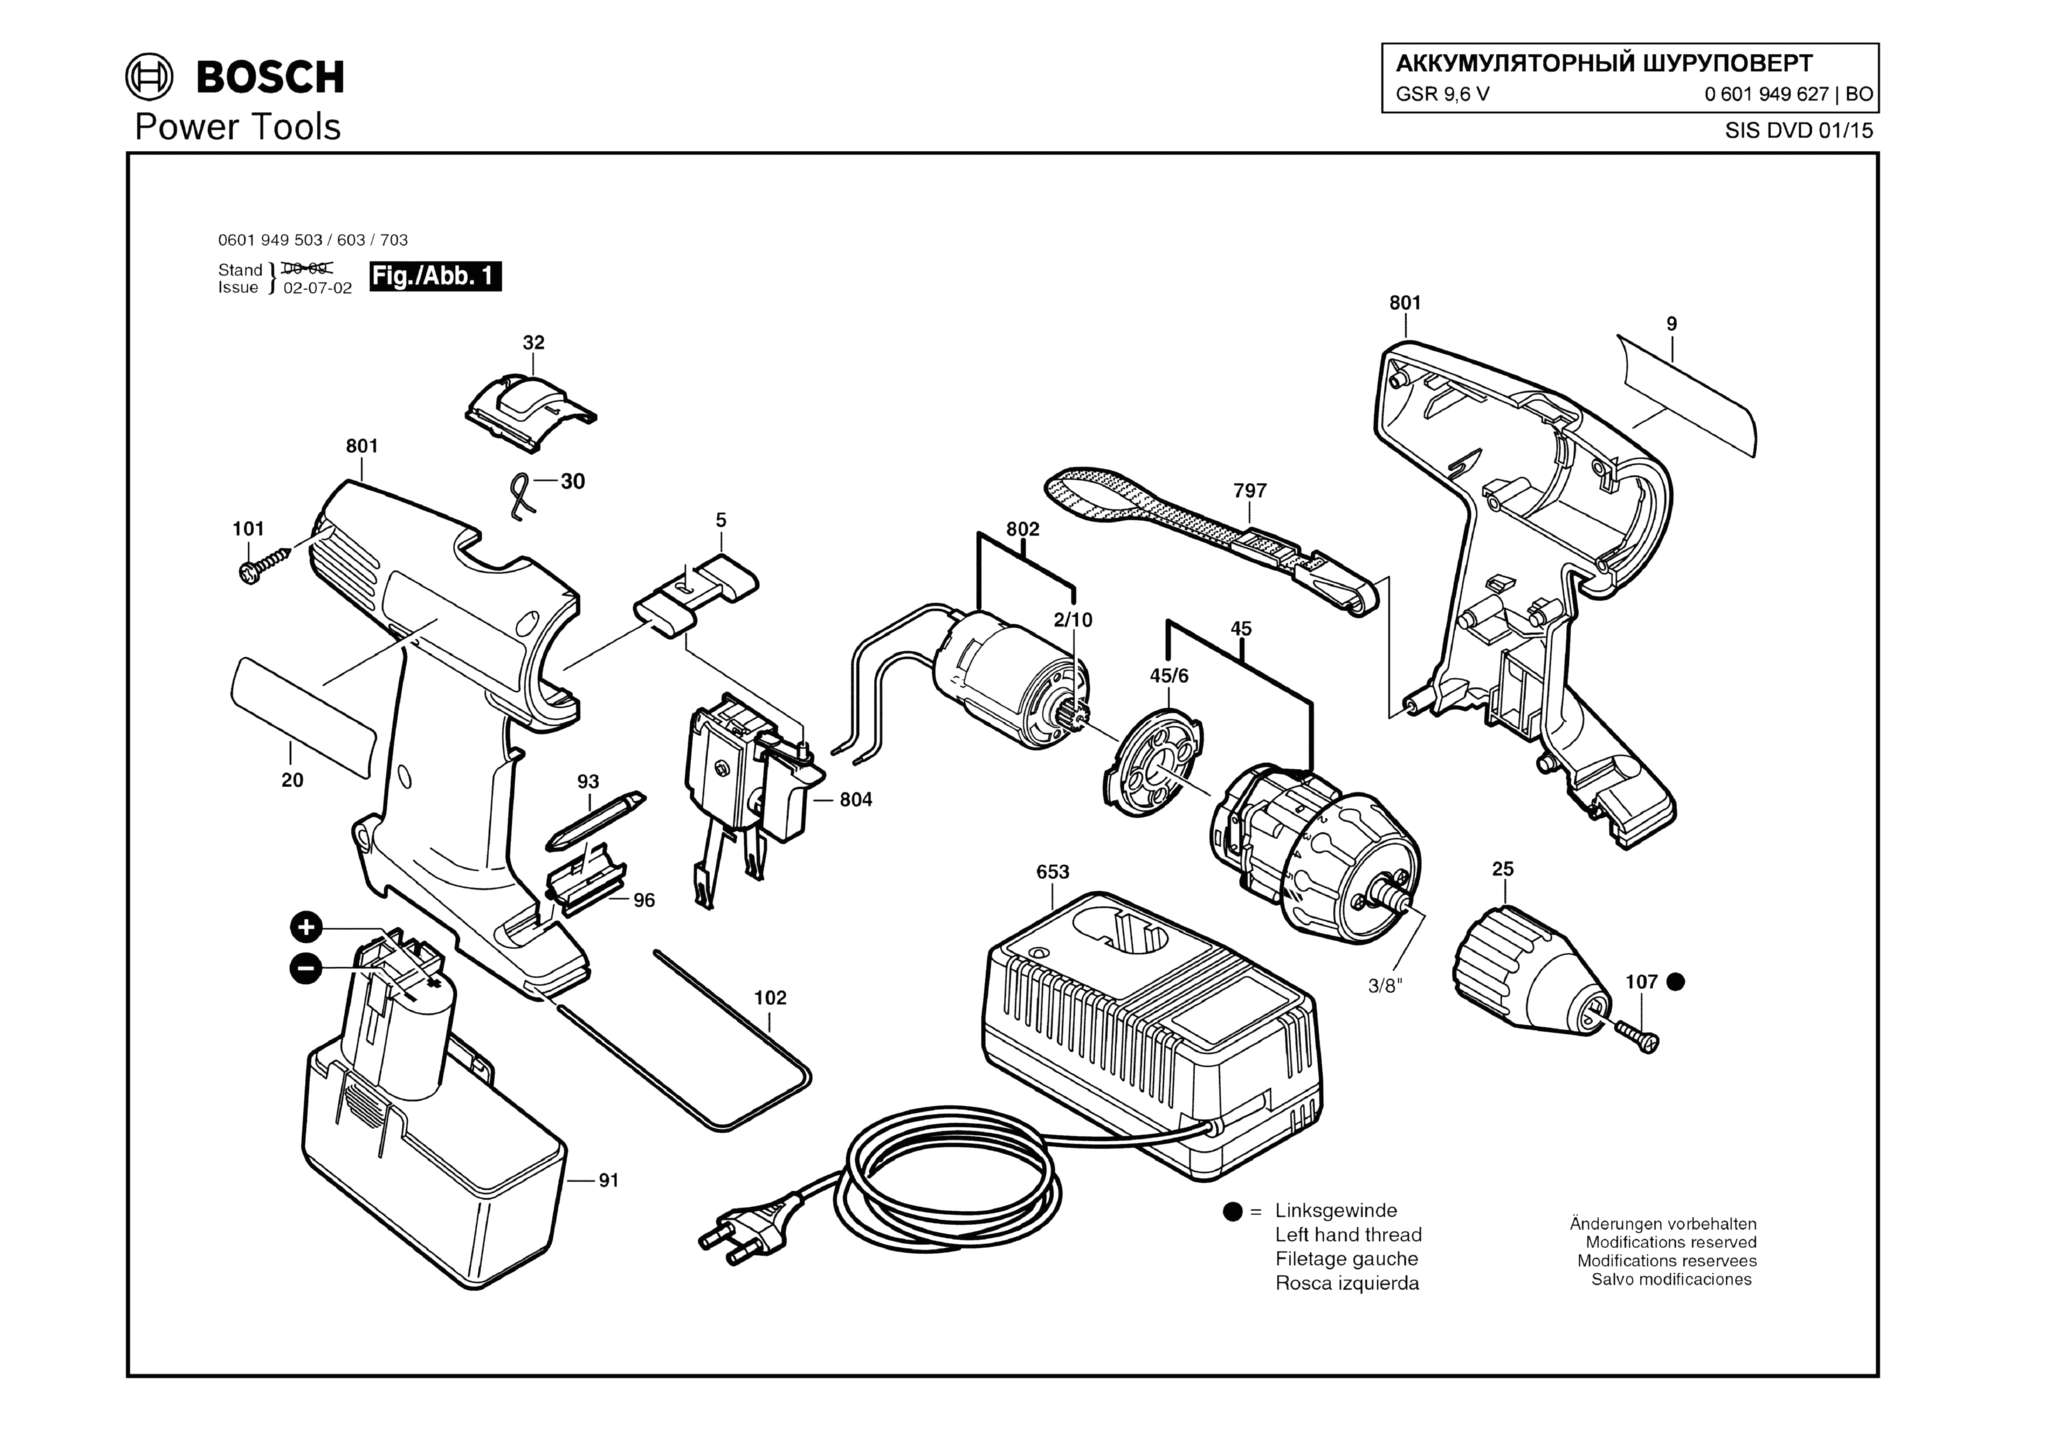 Запчасти, схема и деталировка Bosch GSR 9,6 V (ТИП 0601949627)